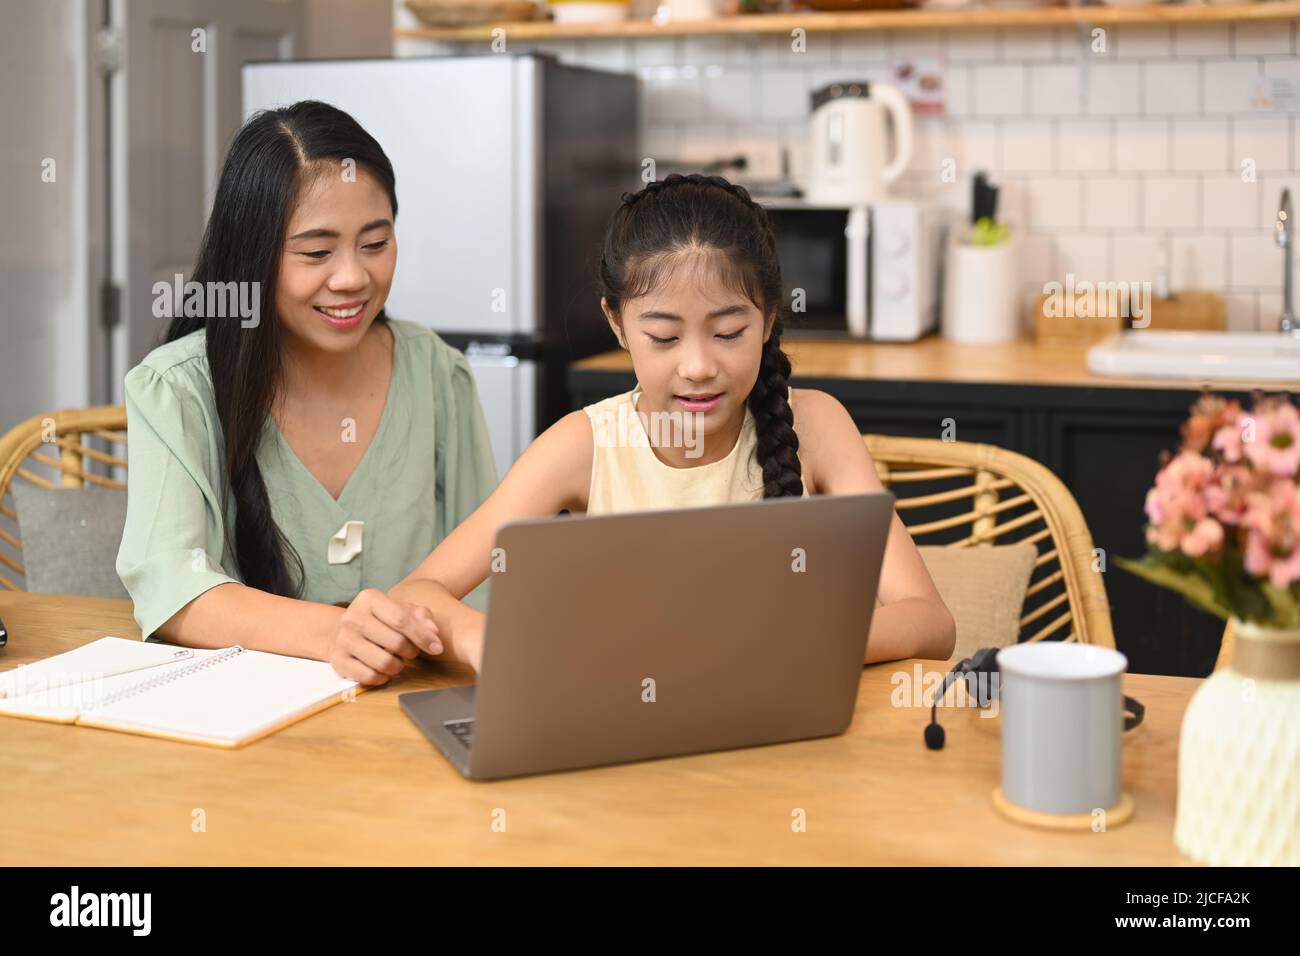 Mère asiatique aidant sa petite fille à faire ses devoirs, étudiant par le biais du système d'apprentissage en ligne Banque D'Images